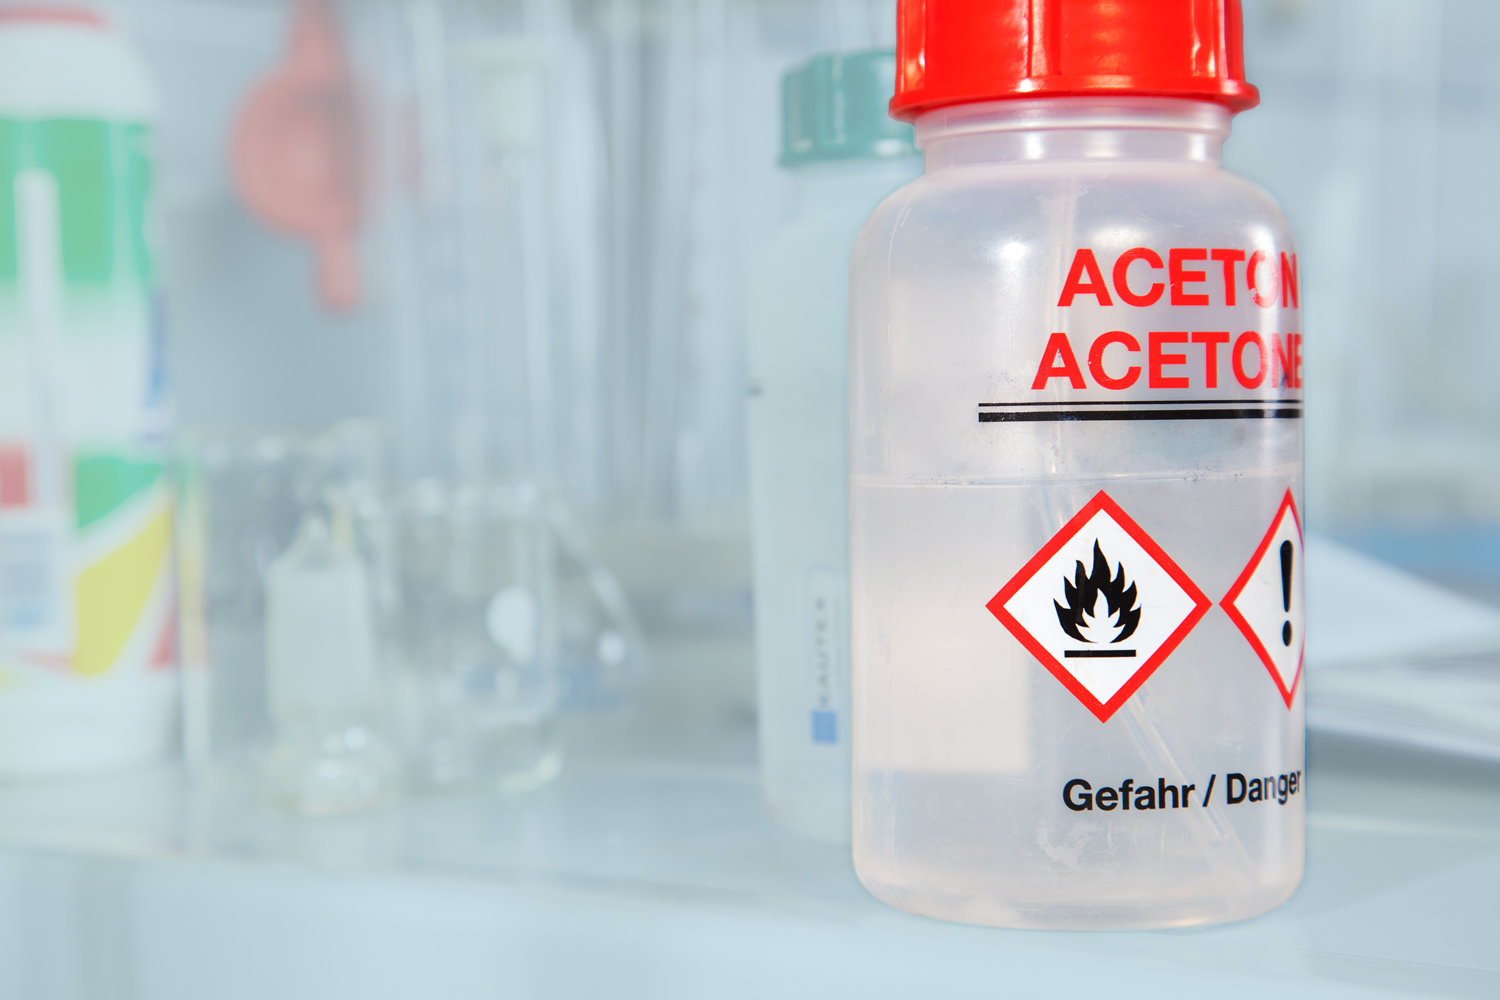 acetone use